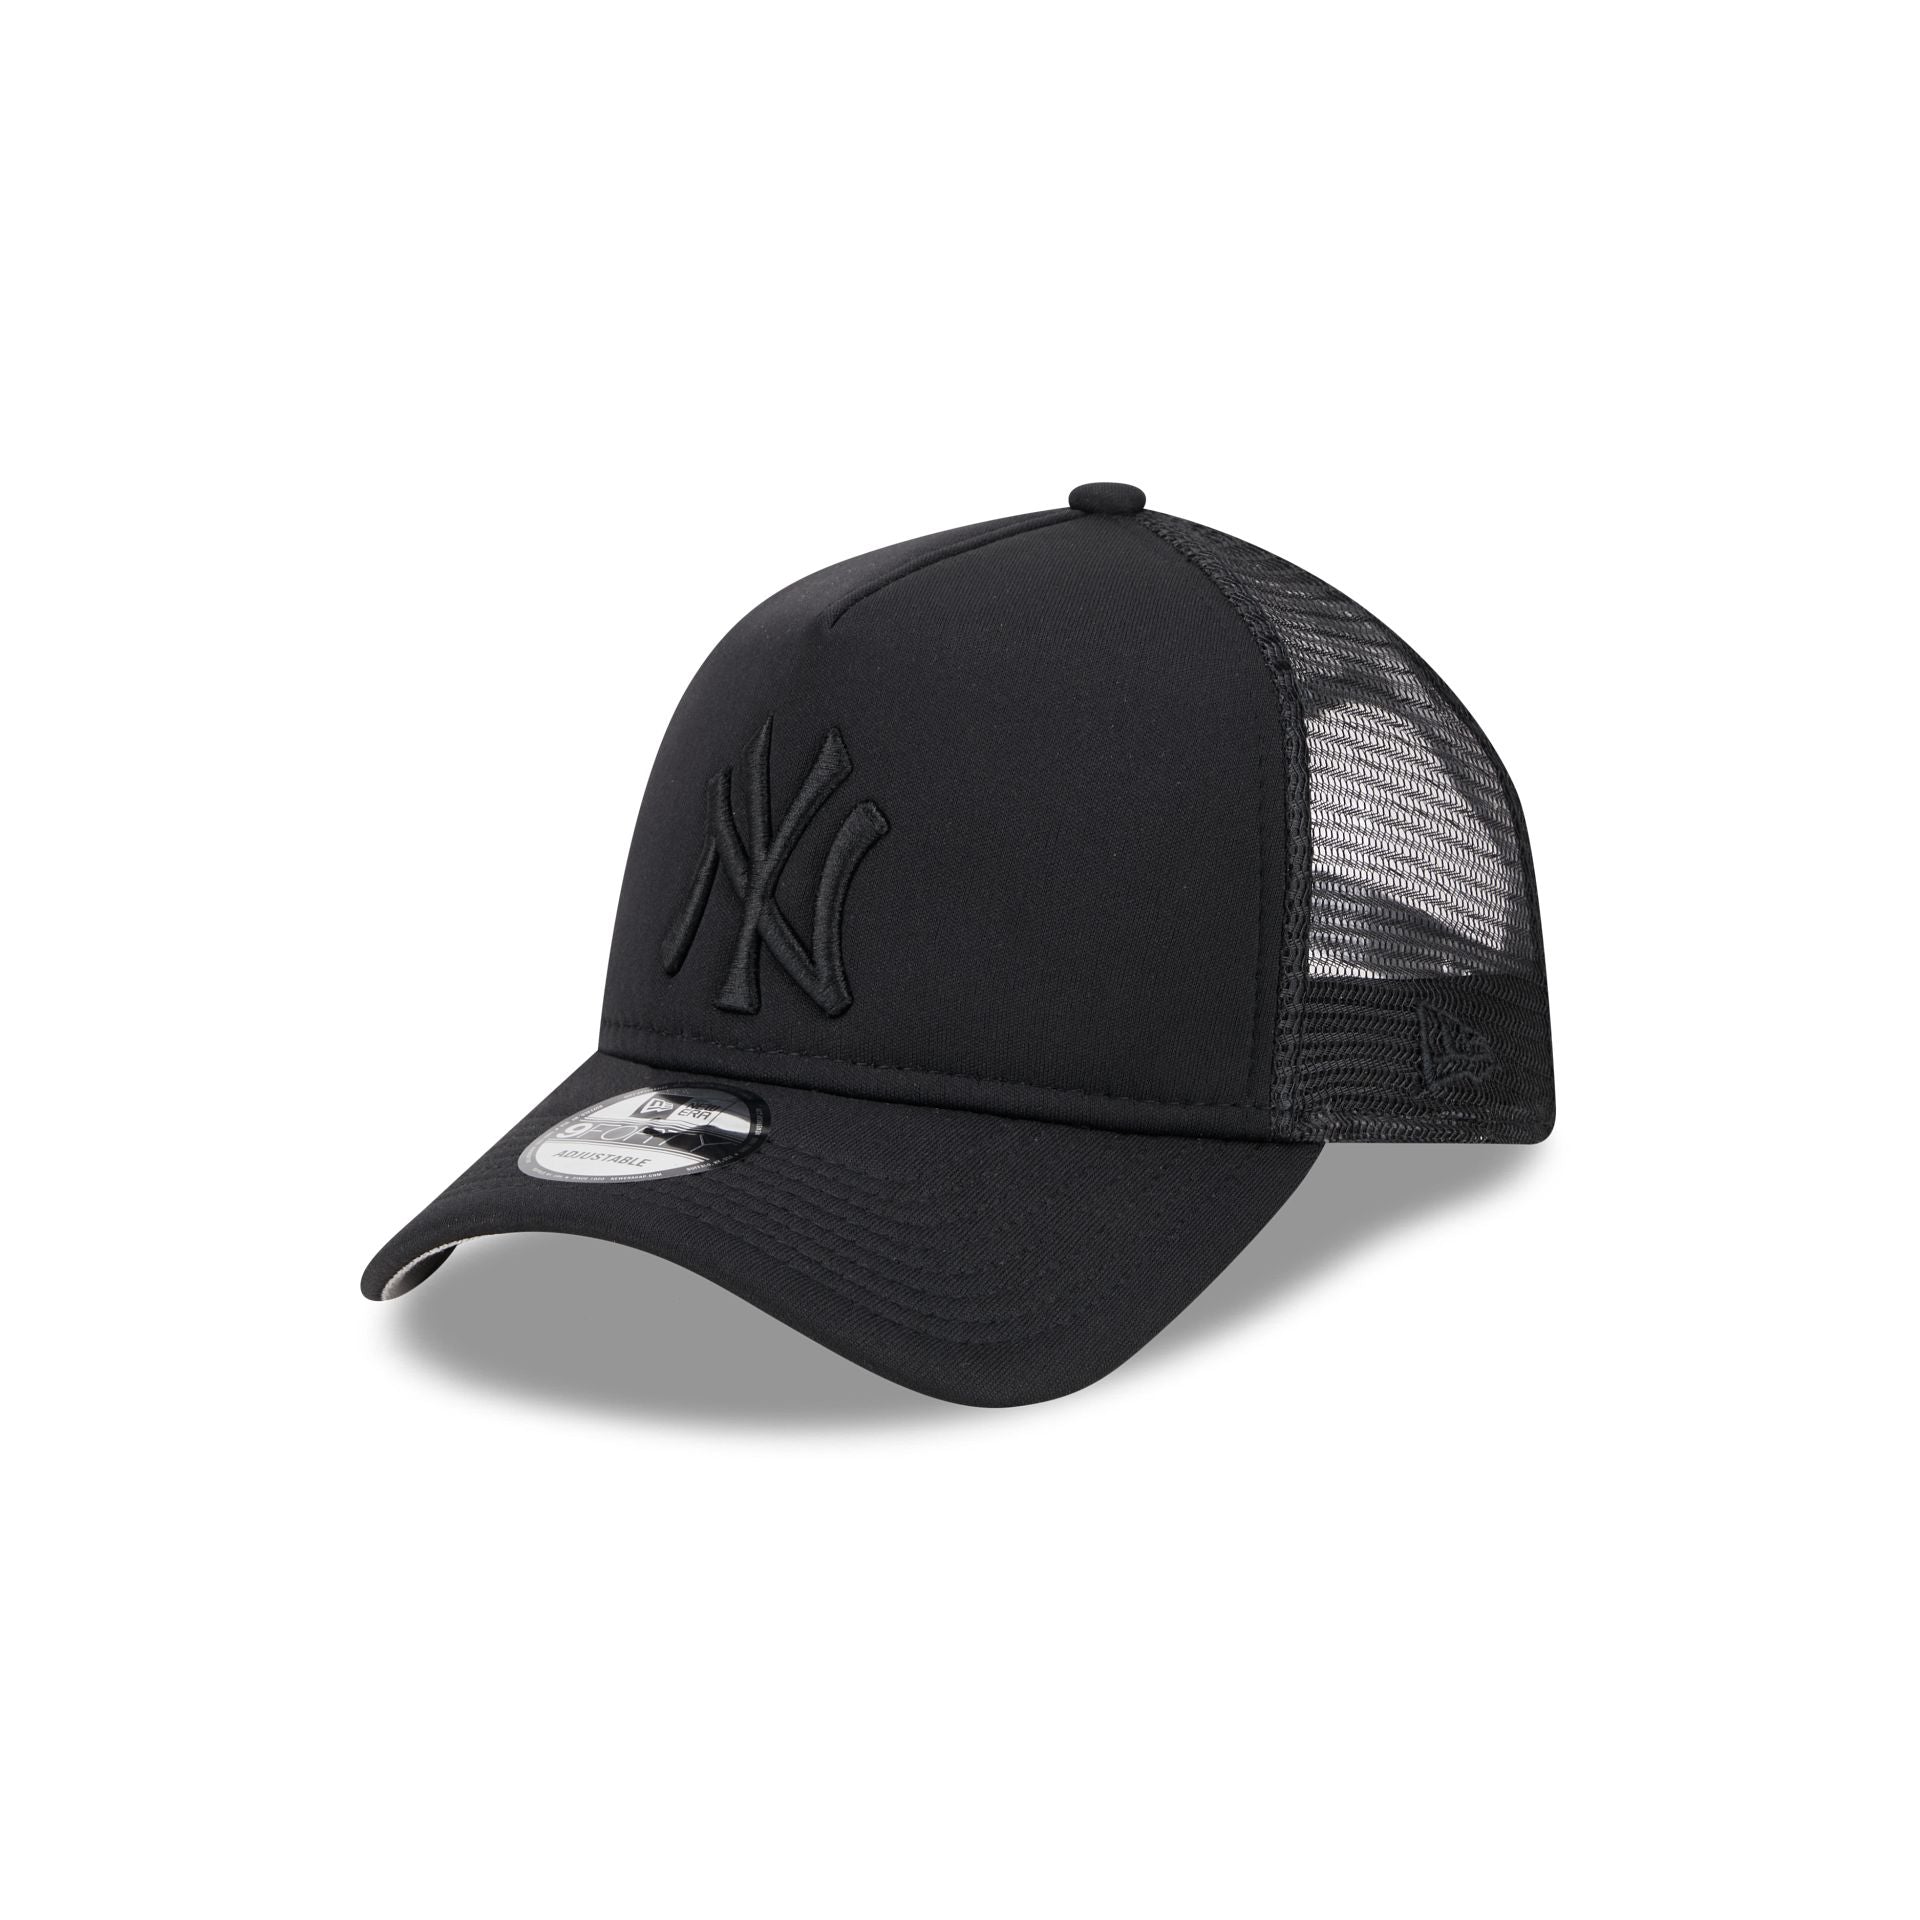 Velvet Black/Black A-frame Trucker - Equip cap